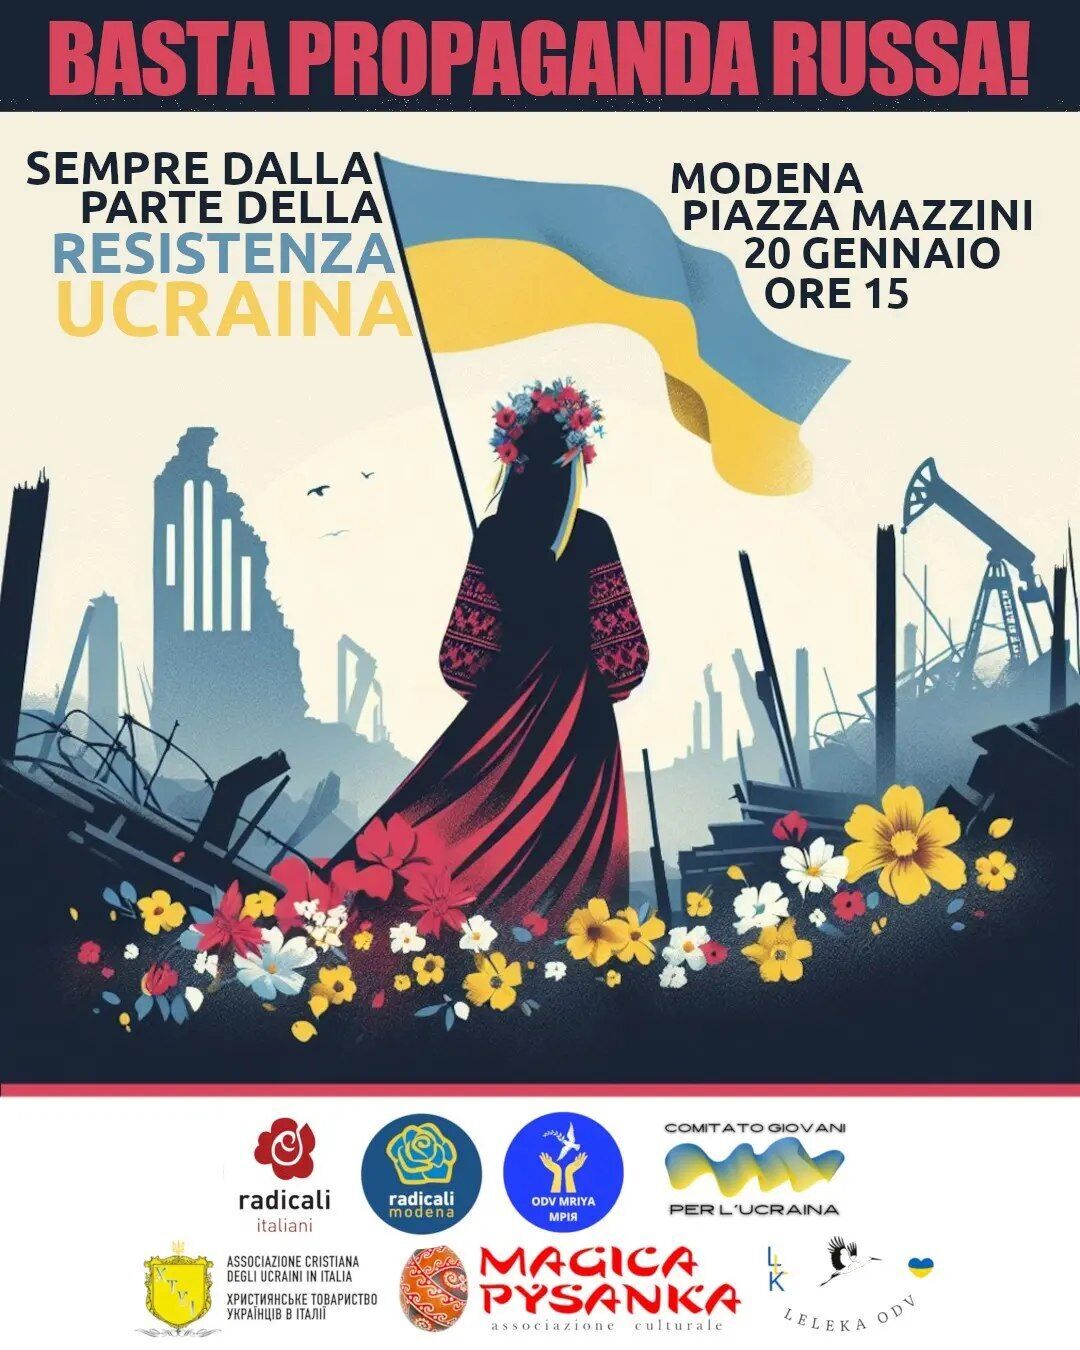 Російська пропаганда в дії: в Італії готували виставку про "розквіт" Маріуполя під окупацією